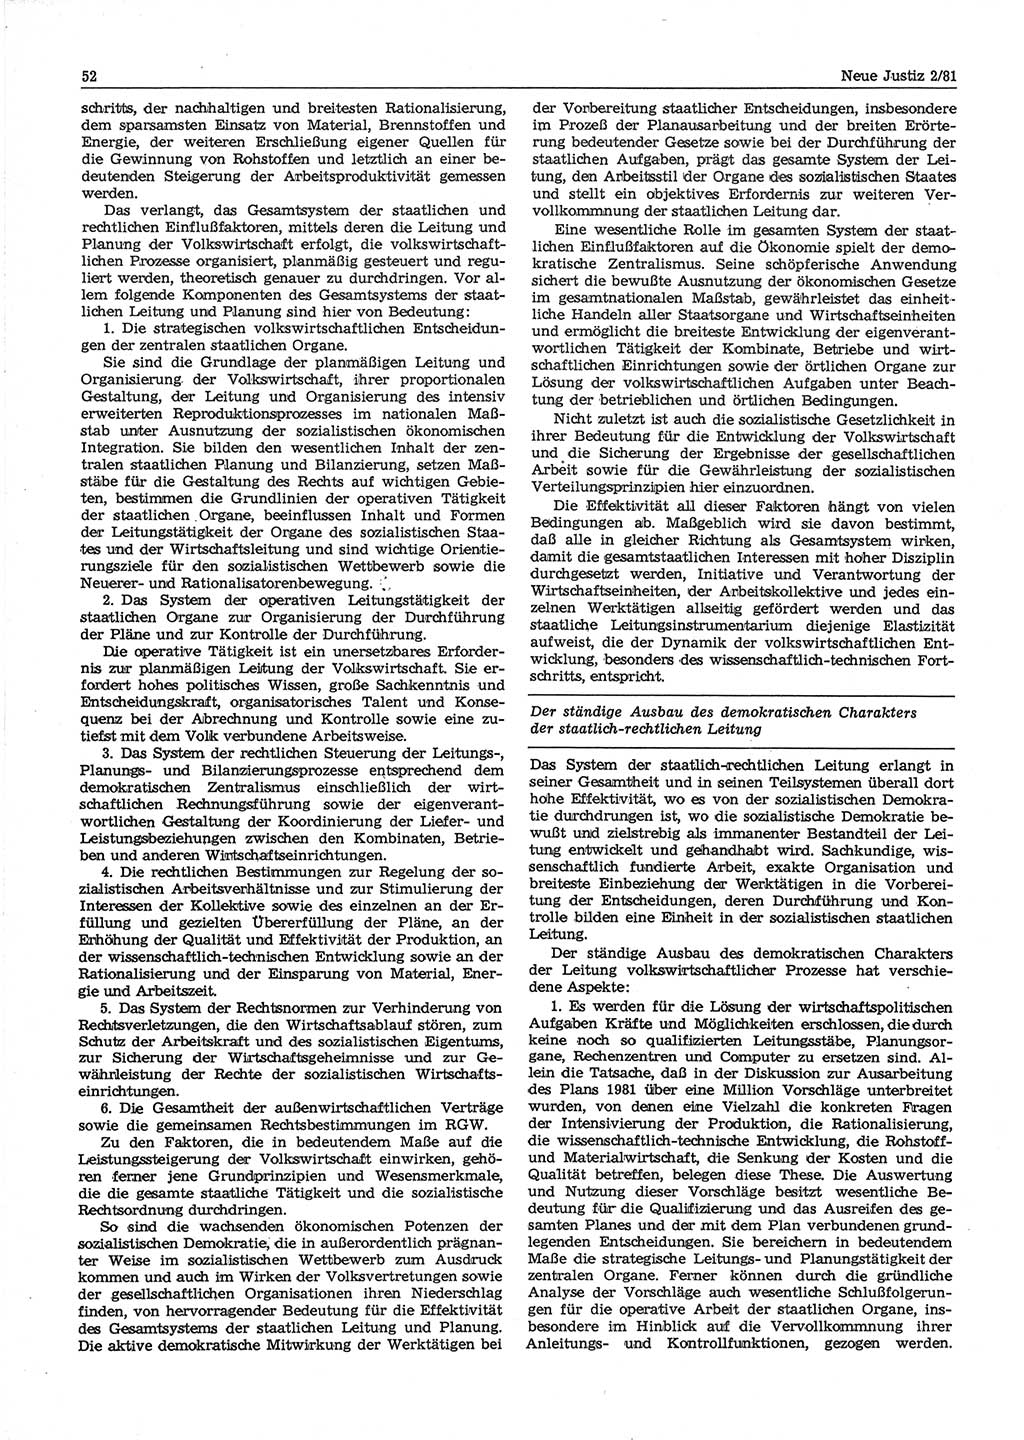 Neue Justiz (NJ), Zeitschrift für sozialistisches Recht und Gesetzlichkeit [Deutsche Demokratische Republik (DDR)], 35. Jahrgang 1981, Seite 52 (NJ DDR 1981, S. 52)